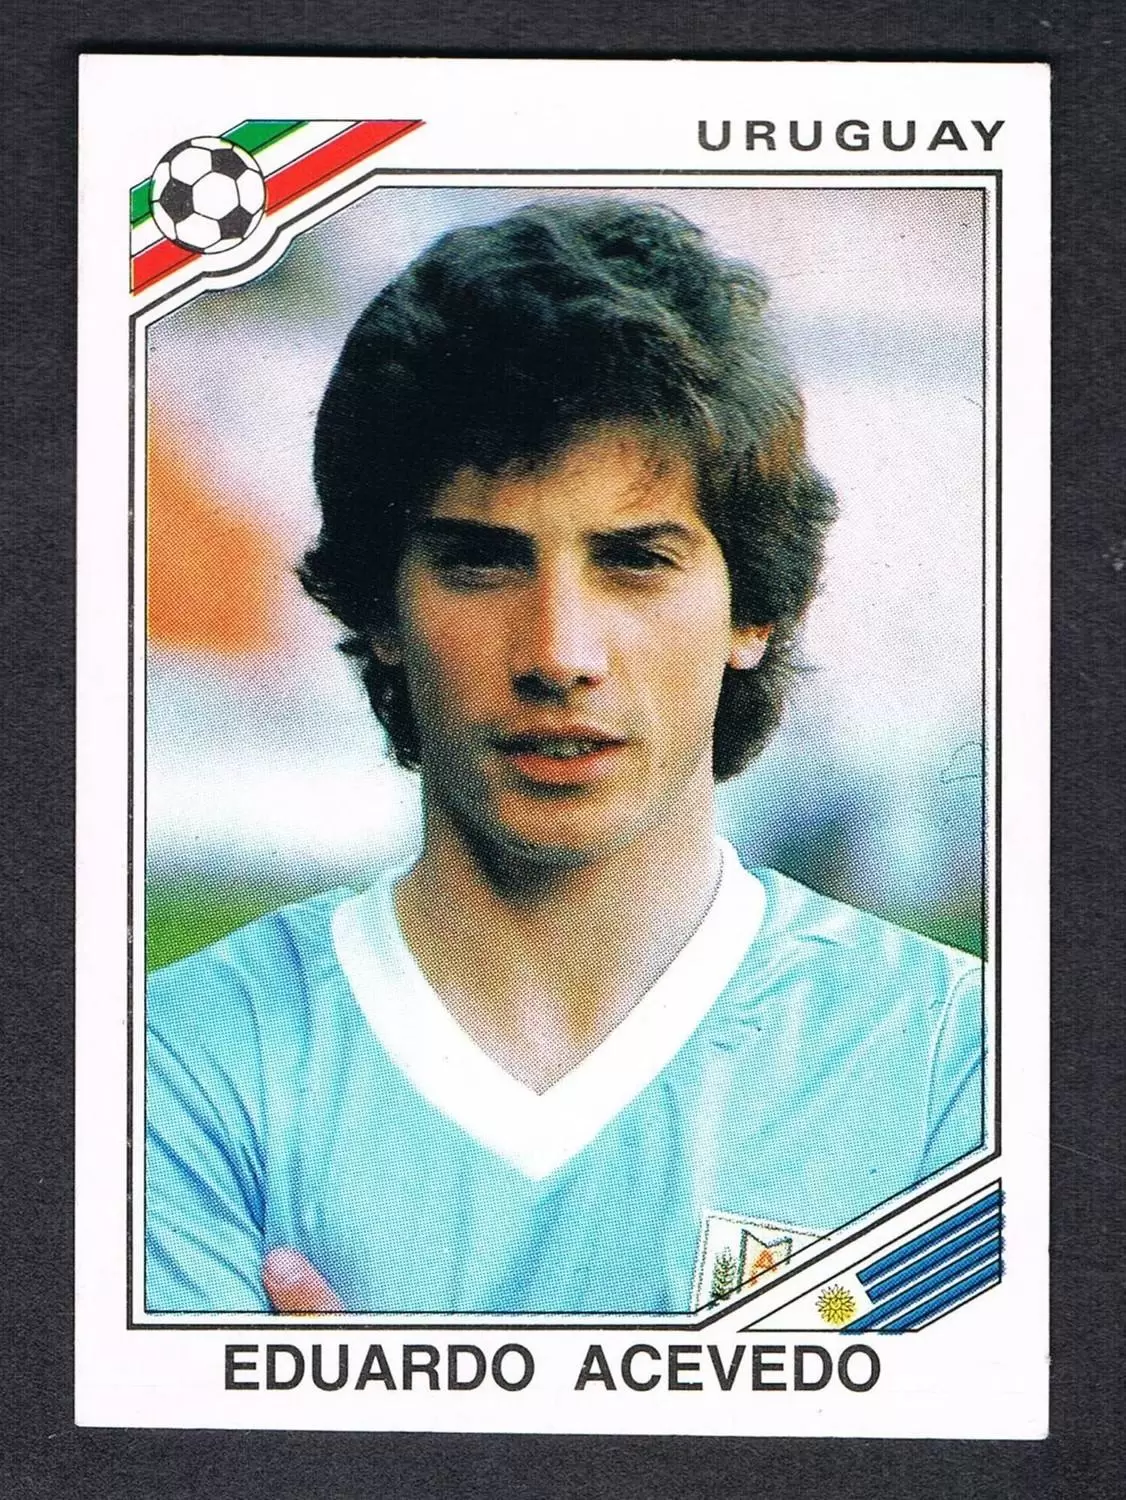 Mexico 86 World Cup - Eduardo Acevedo - Uruguay